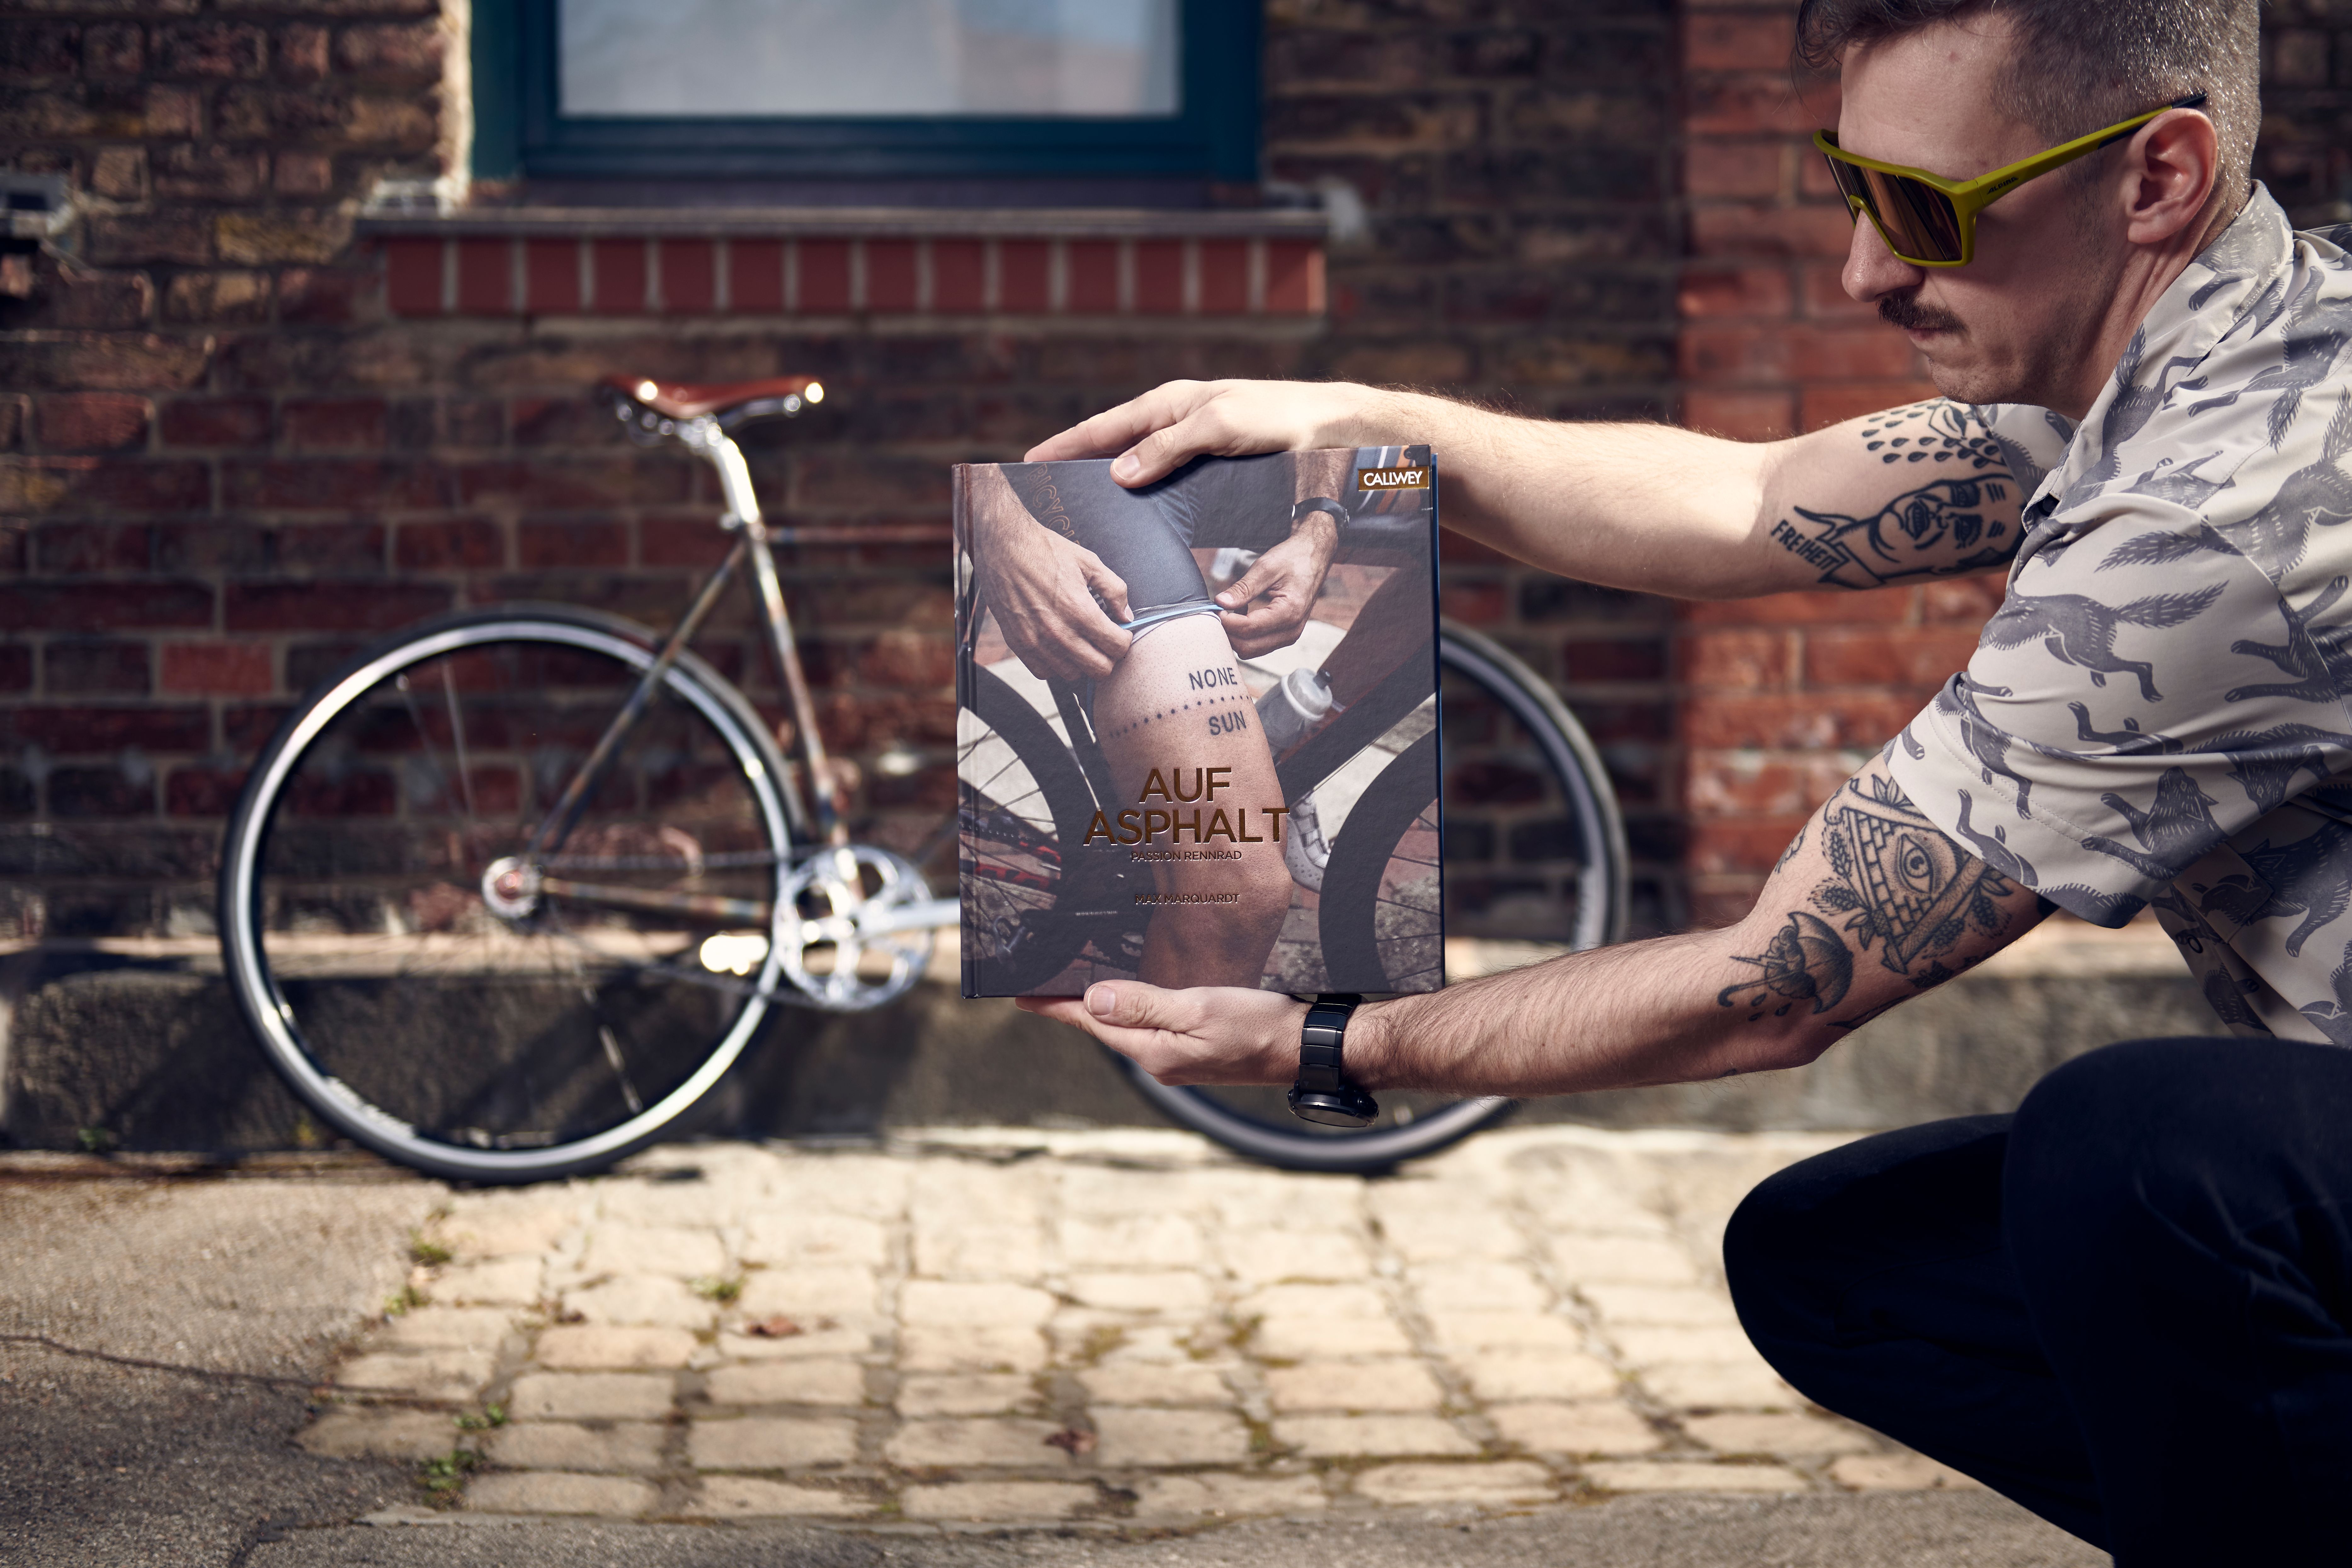 Rennradfahrer Max und sein Buch